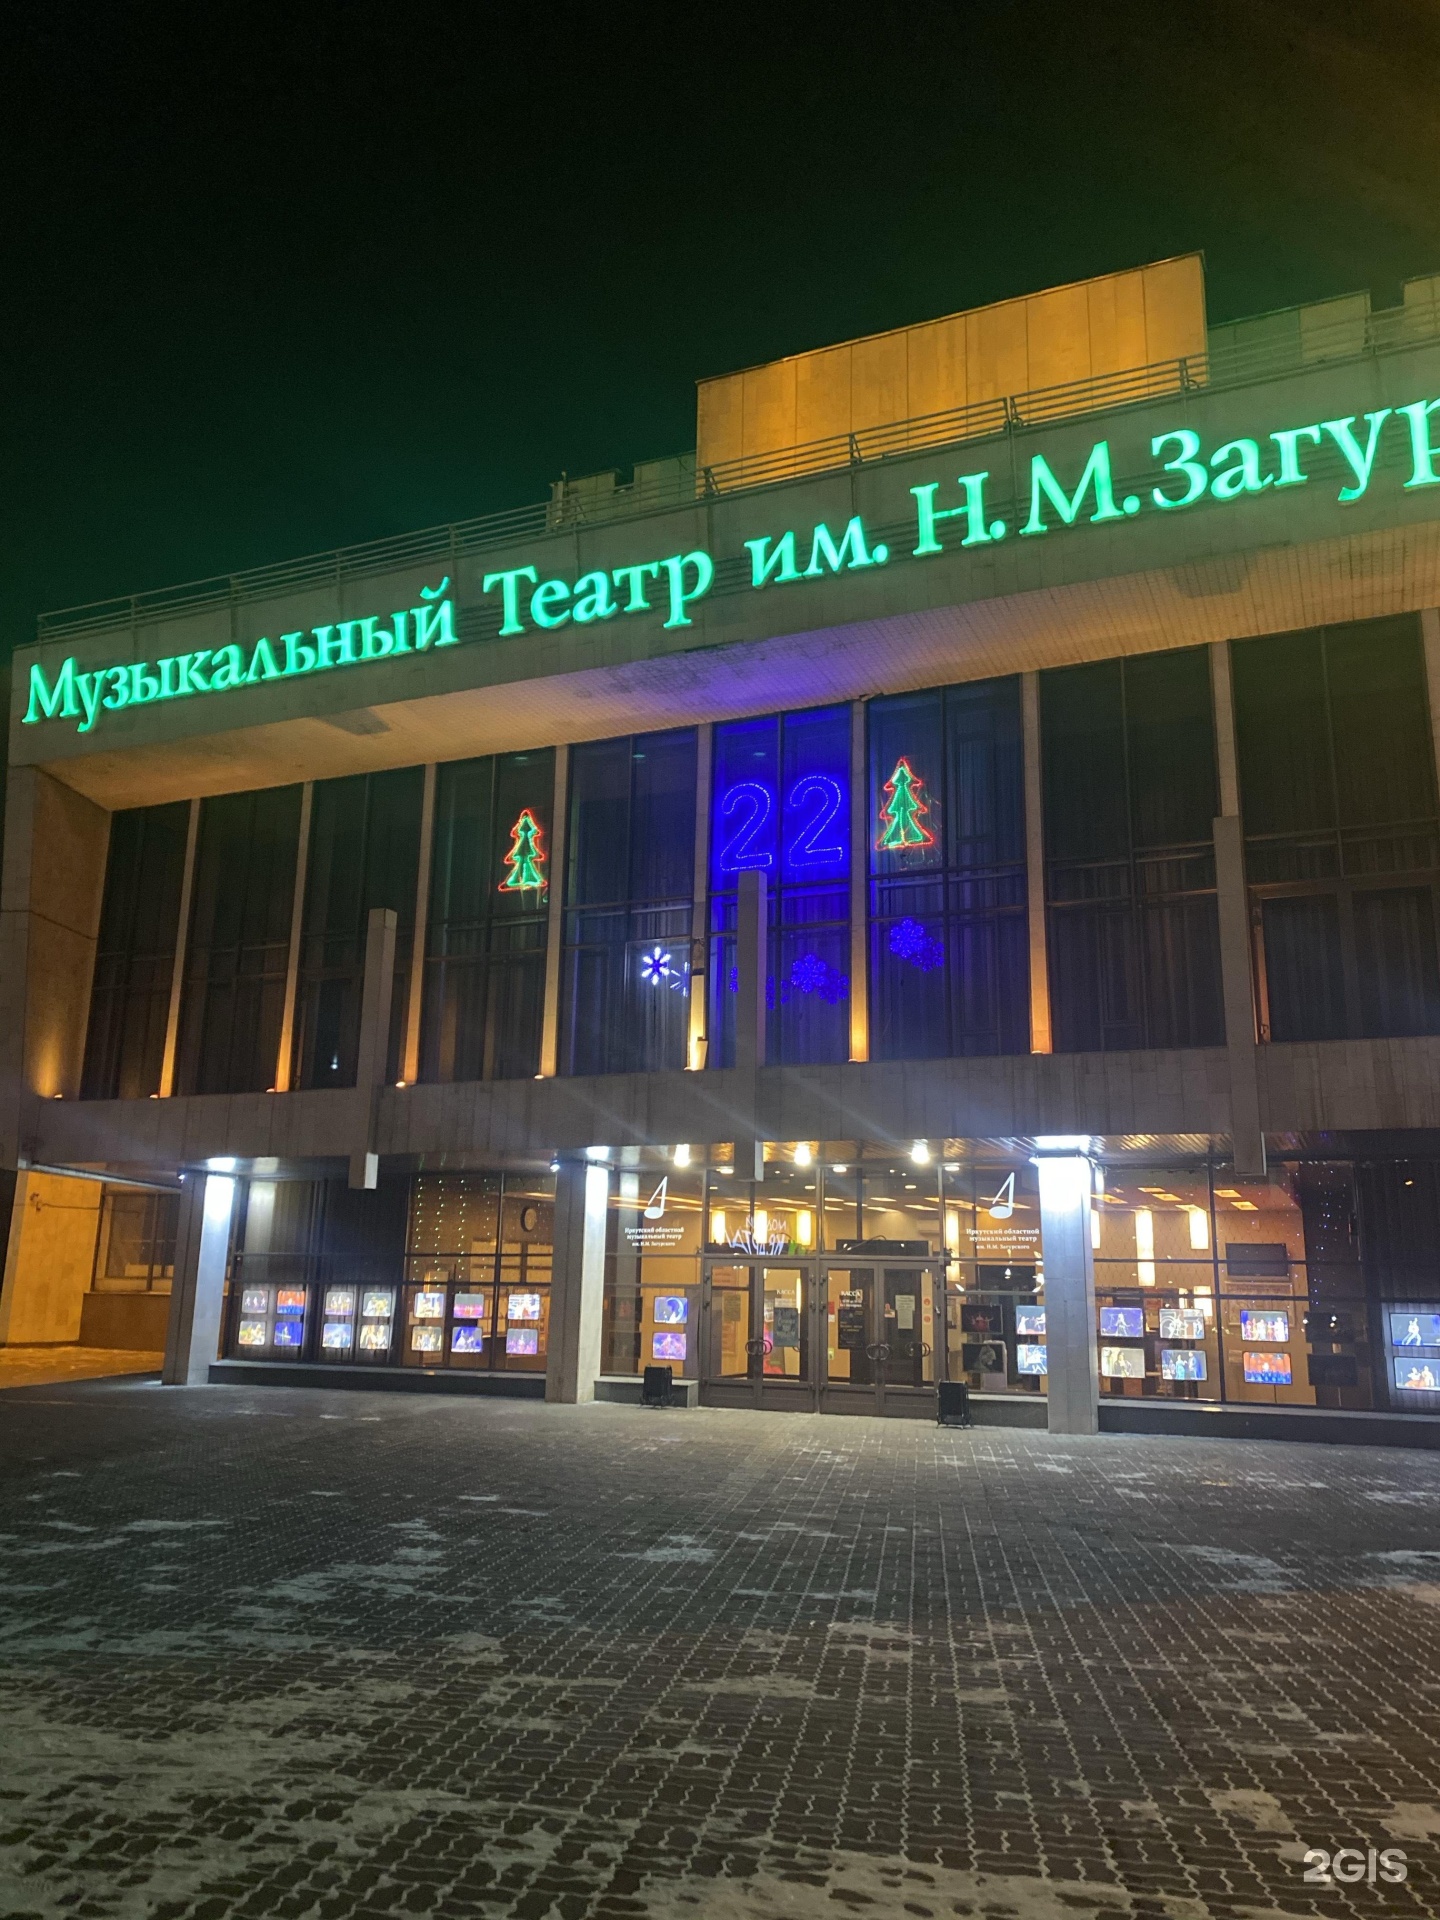 Иркутский областной музыкальный театр имени н м загурского